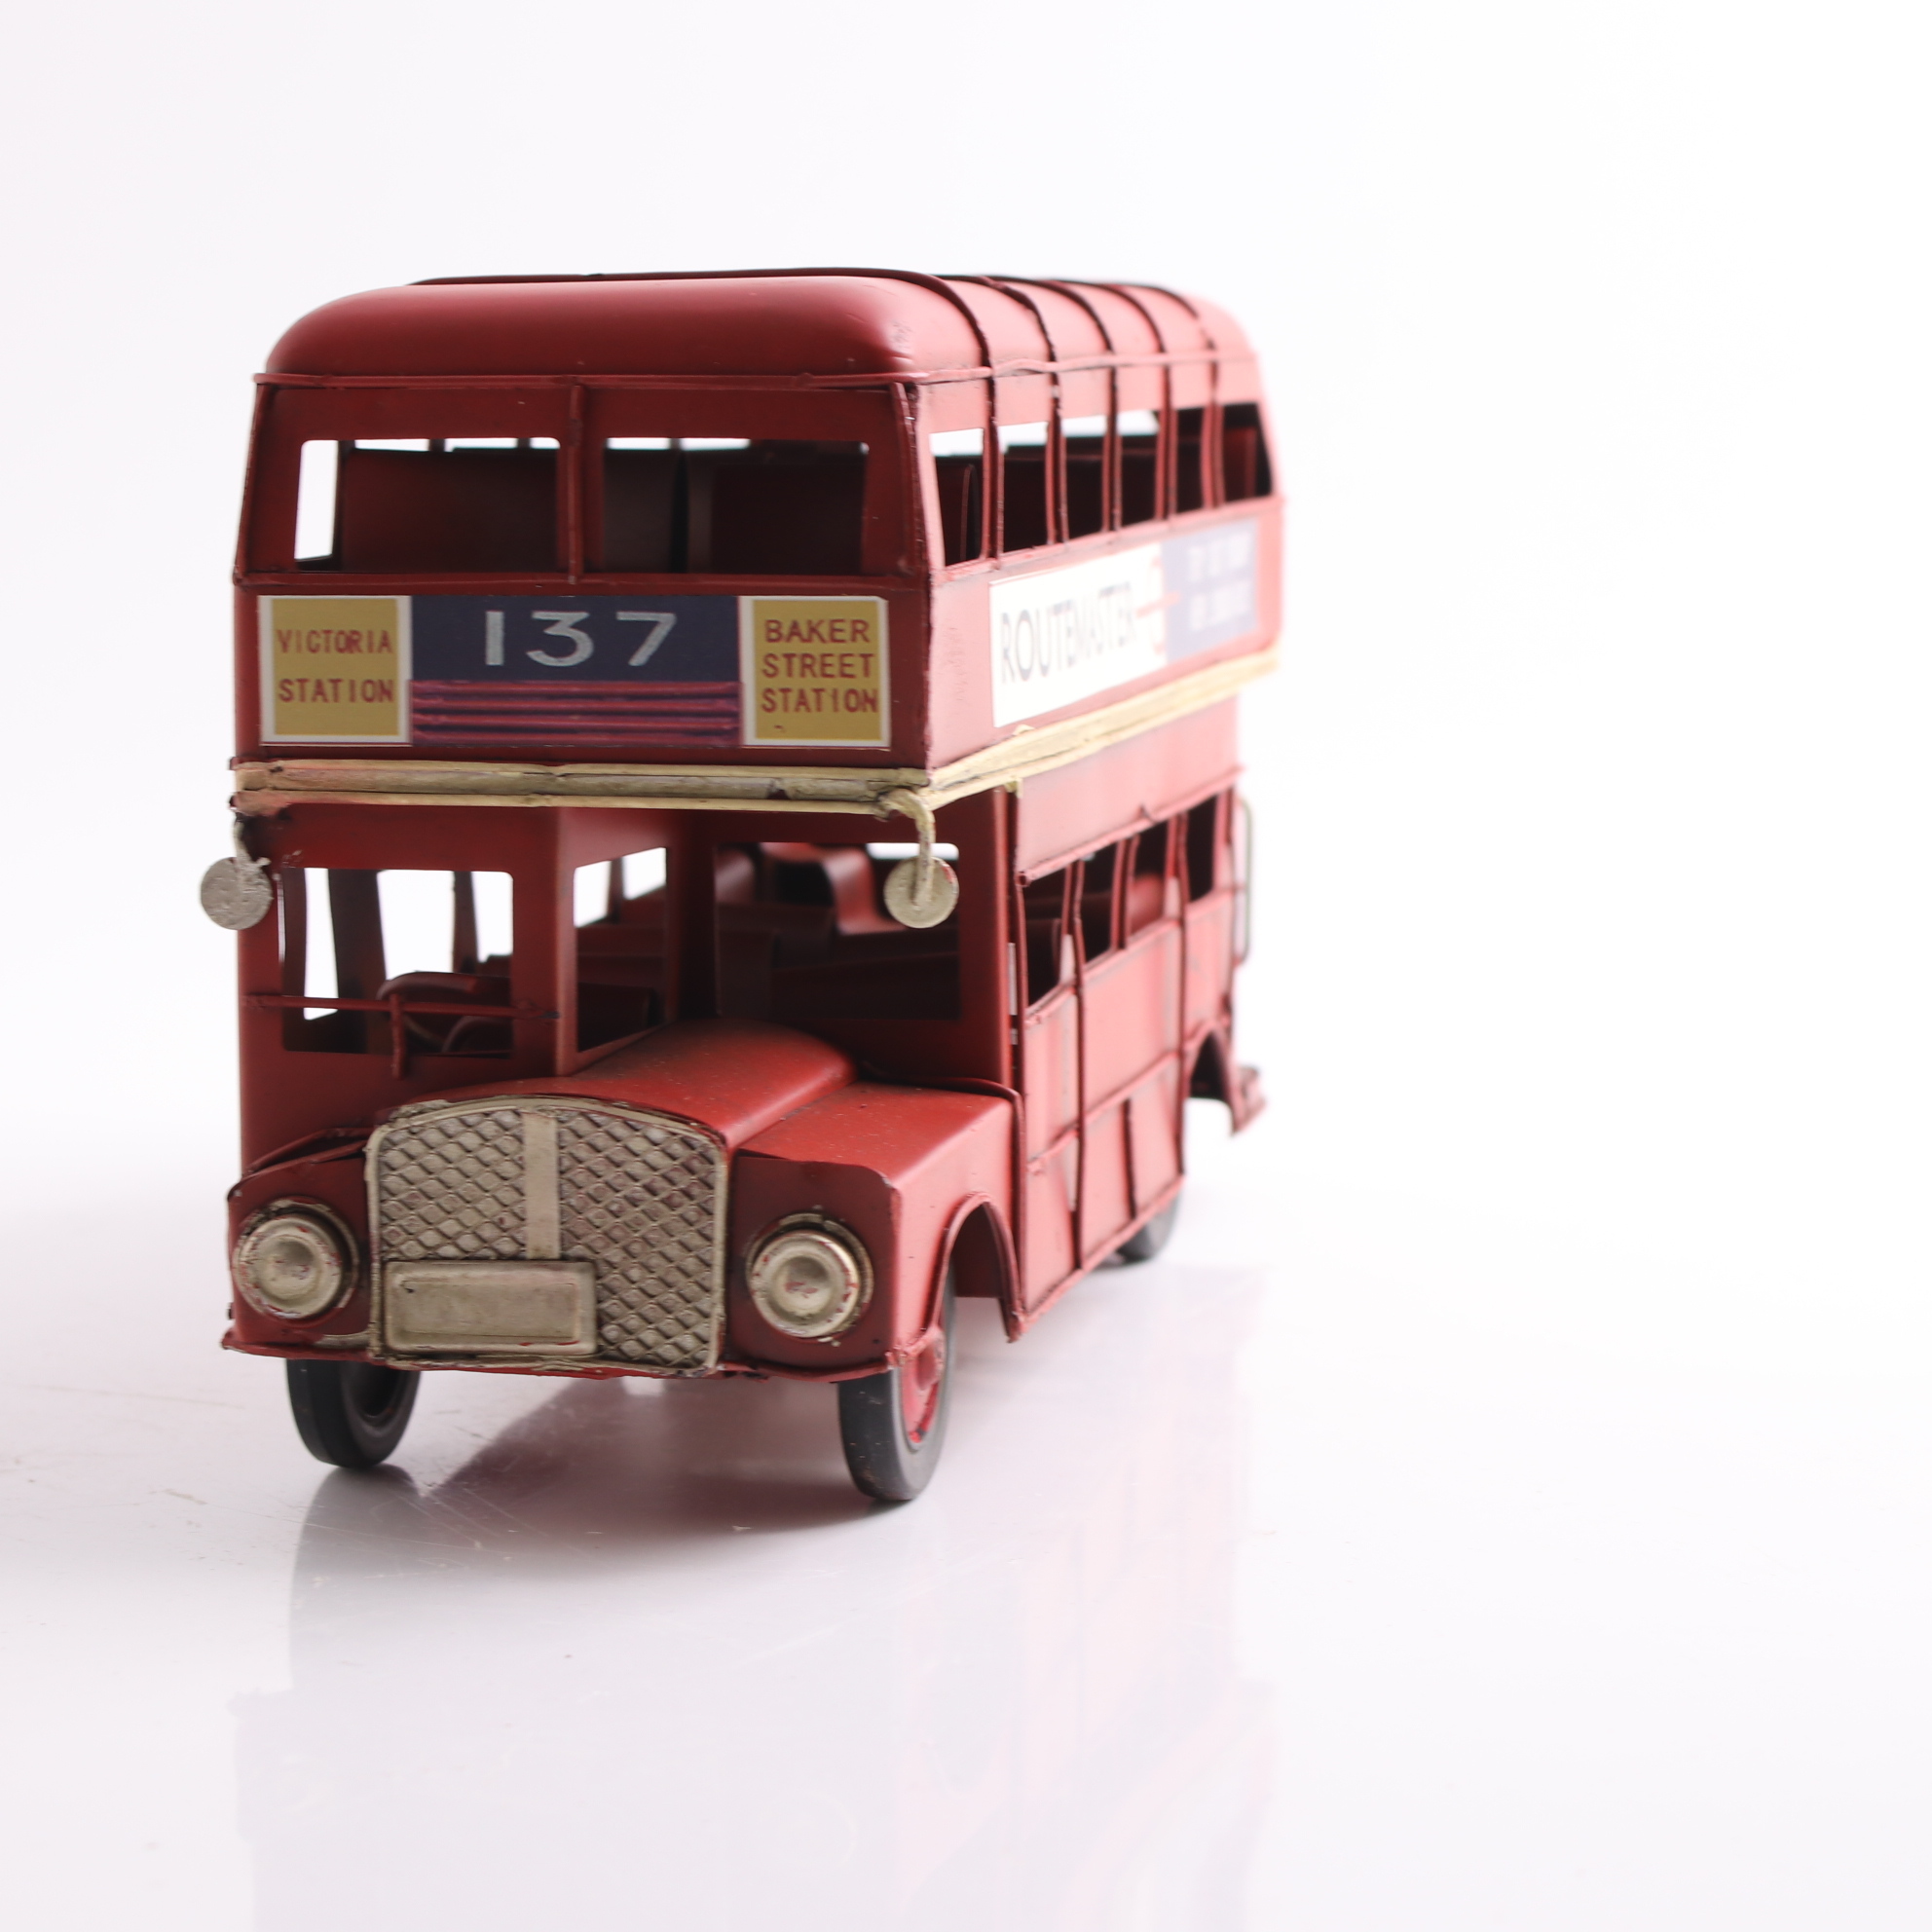 ブリキのおもちゃ オブジェ 置物 インテリア 雑貨 ノスタルジック London Bus ロンドンバス お洒落 おしゃれ ディスプレイ プレゼント 飾り物 雑貨屋リエット